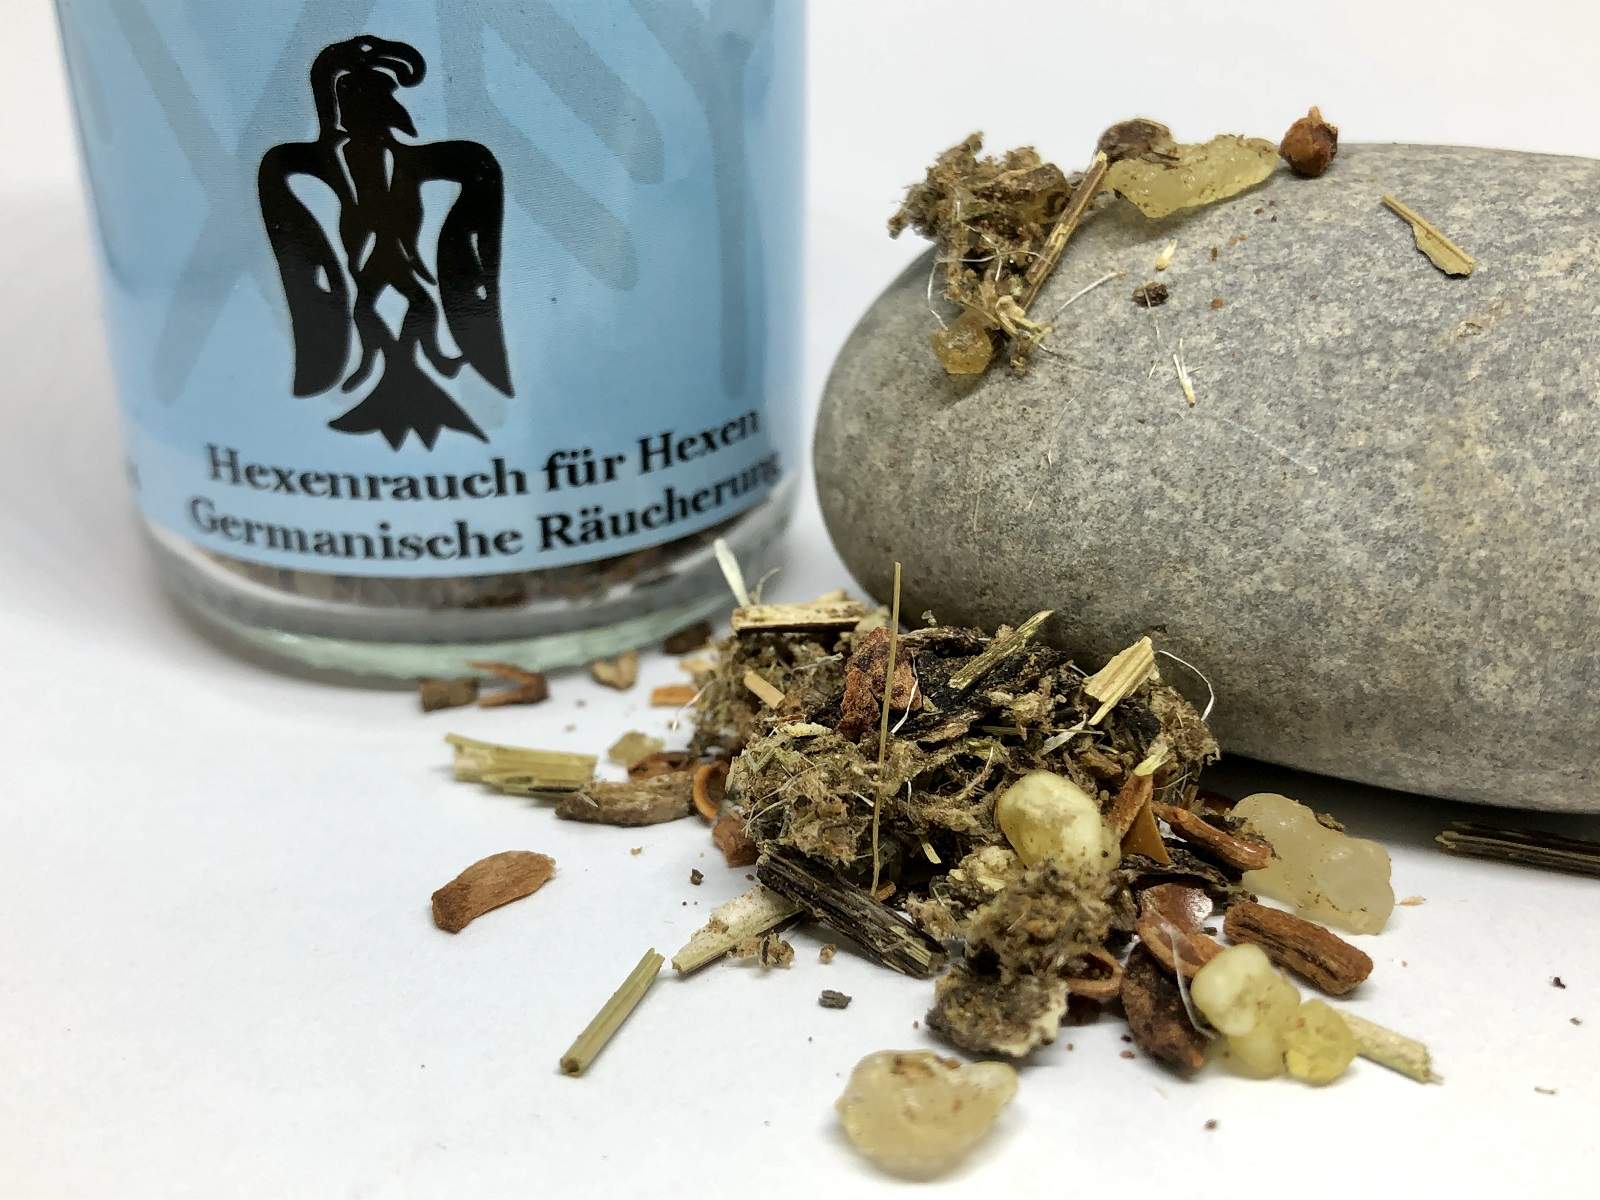 Hexenrauch für Hexen - Germanische Räucherung (60 ml)